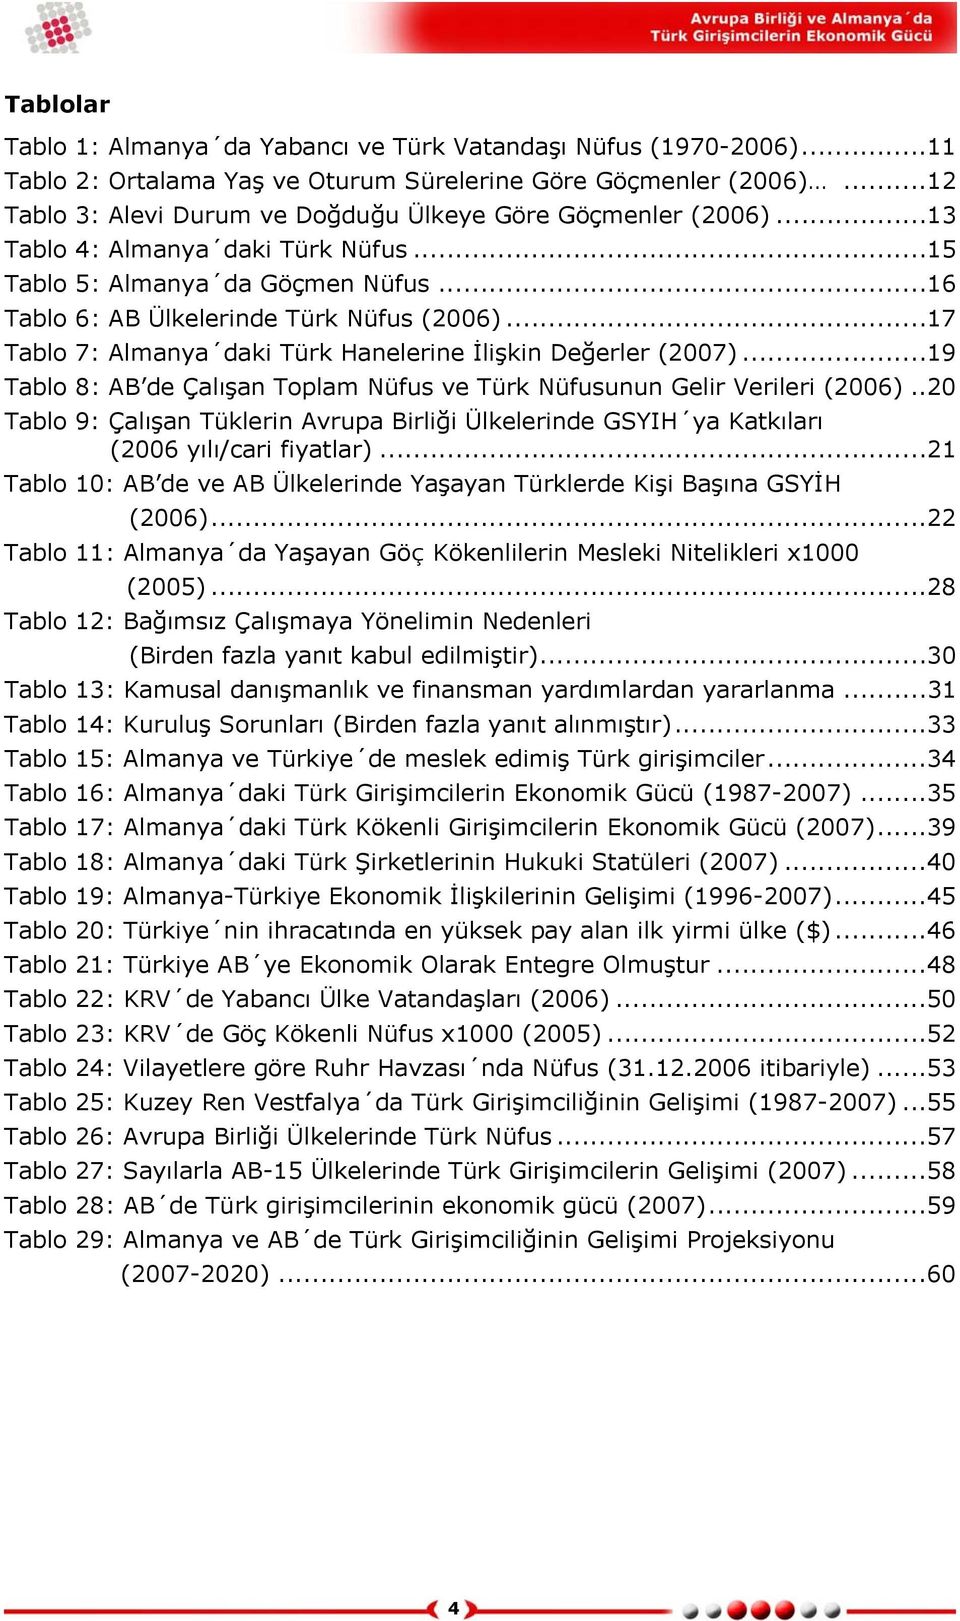 ..17 Tablo 7: Almanya daki Türk Hanelerine İlişkin Değerler (2007)...19 Tablo 8: AB de Çalışan Toplam Nüfus ve Türk Nüfusunun Gelir Verileri (2006).